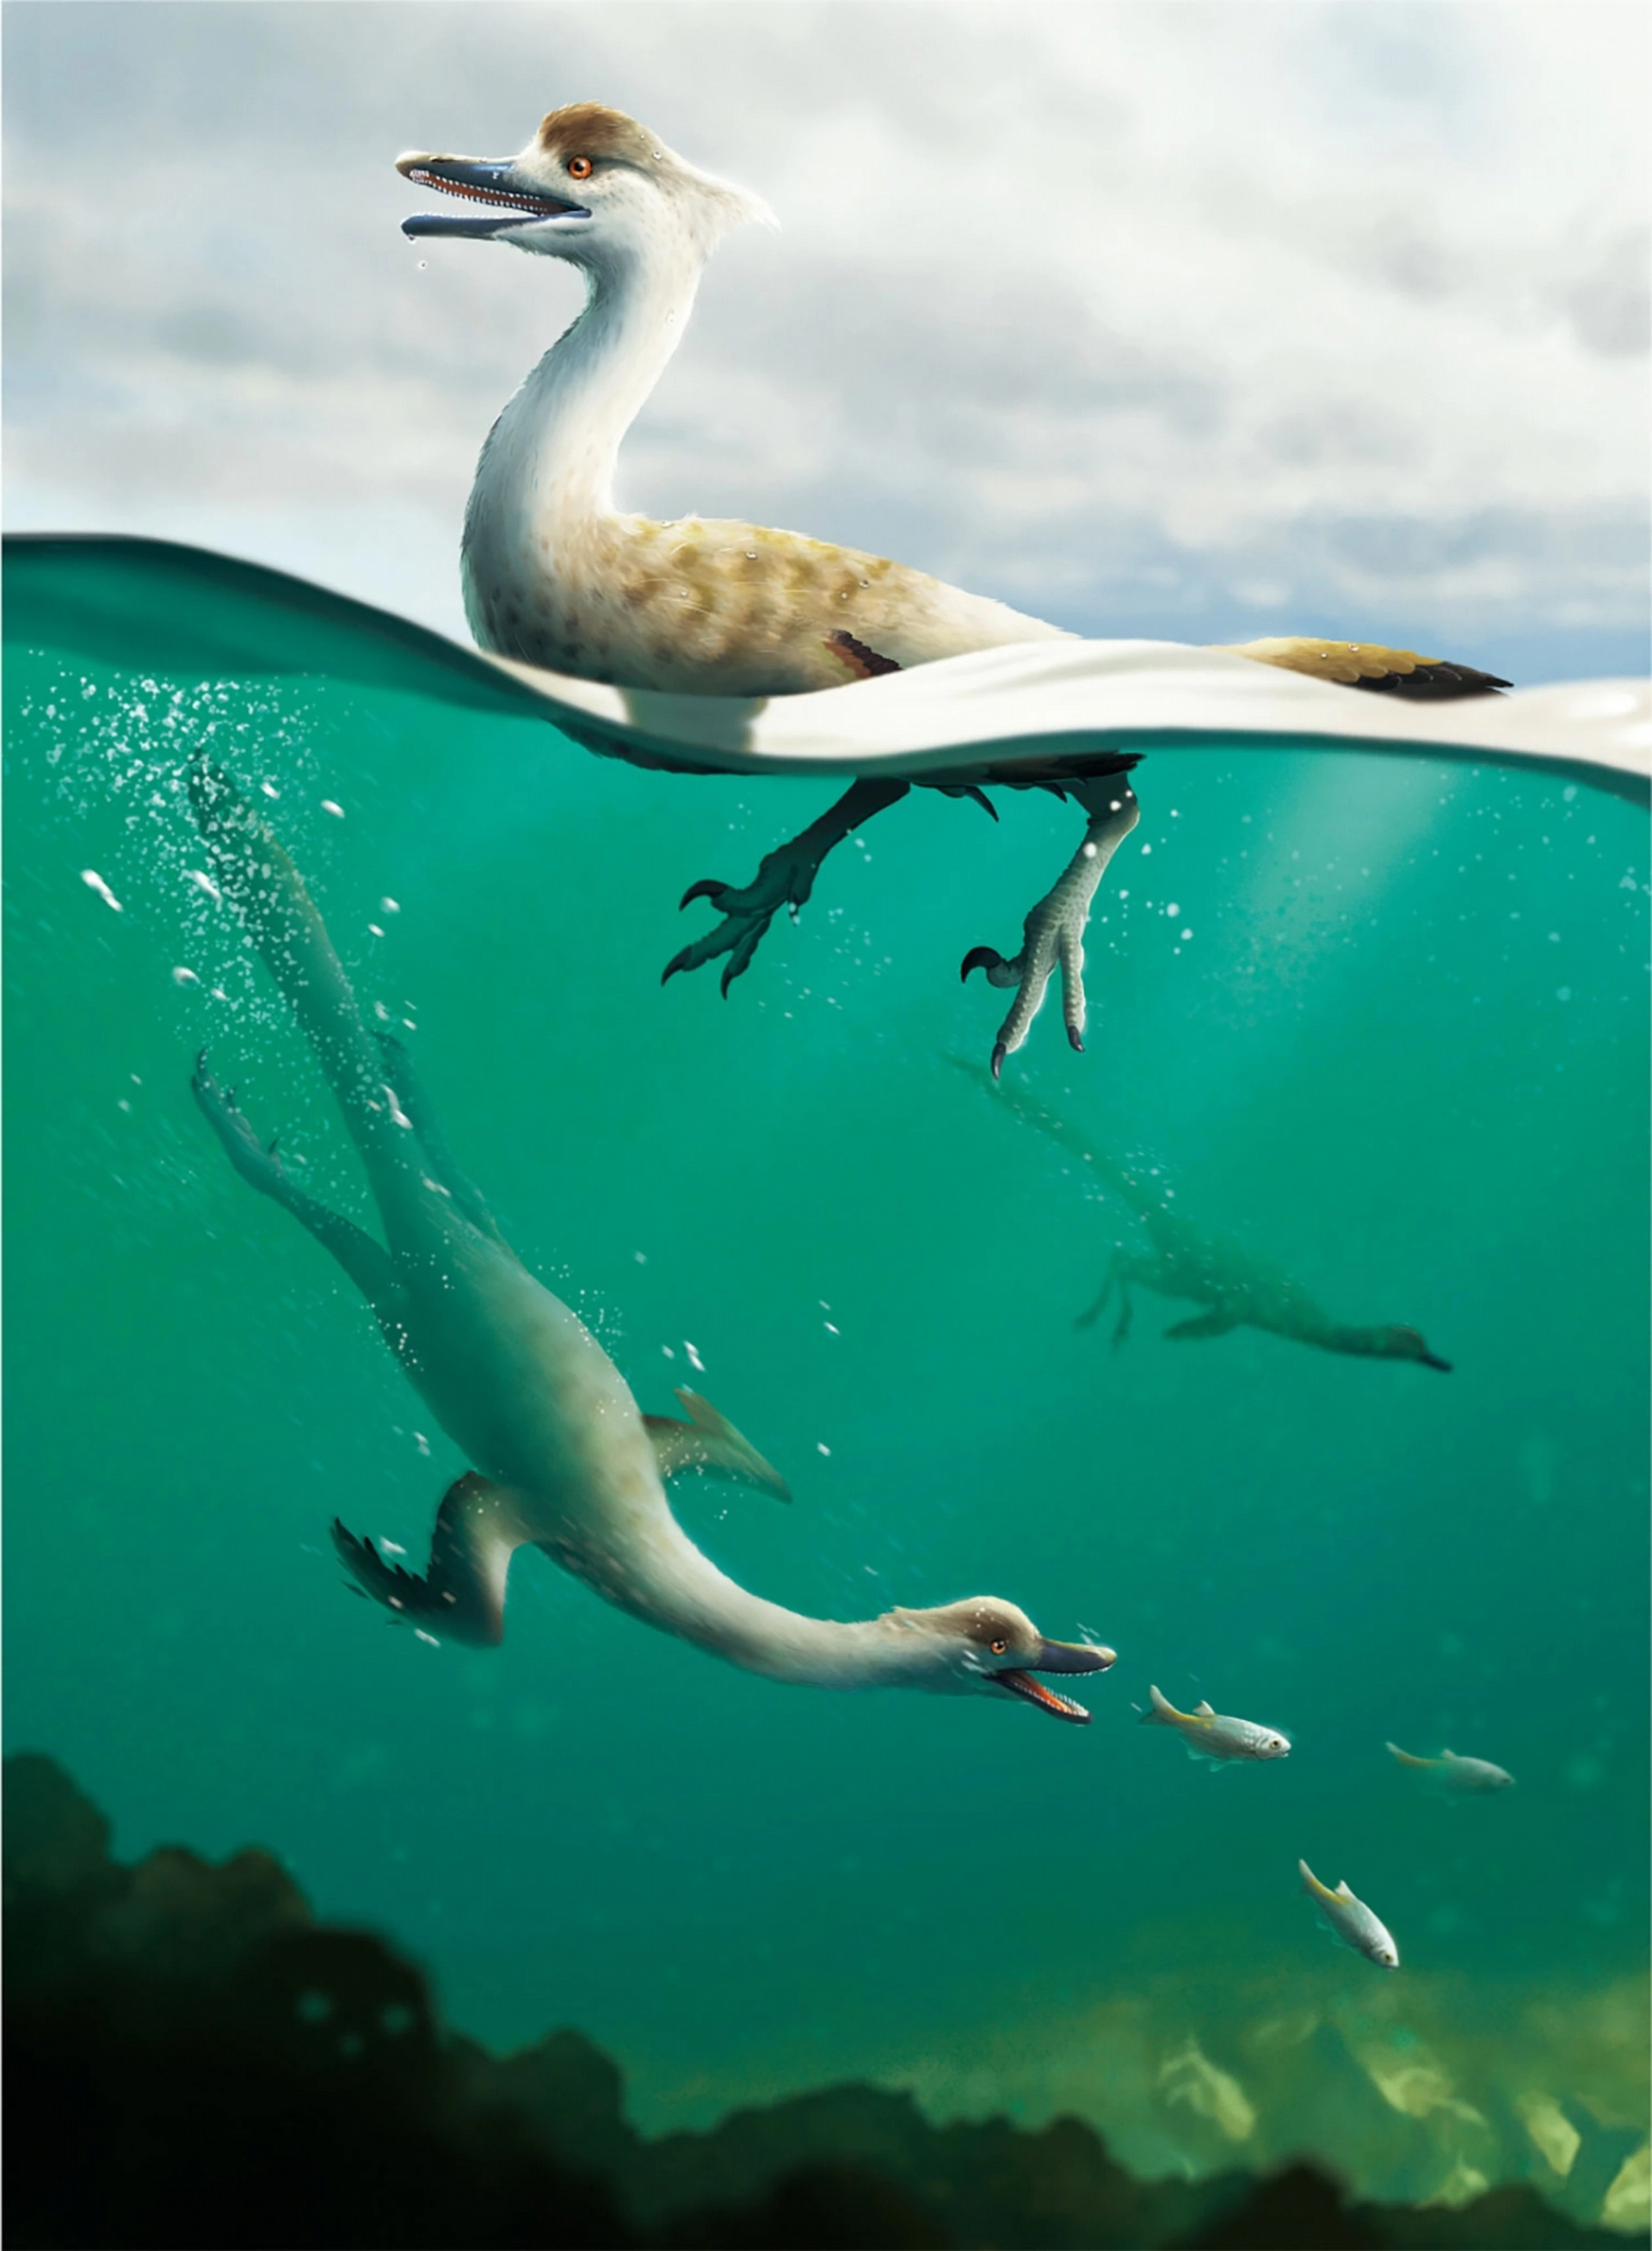 這幅重建圖描繪的是馳龍科──伶盜龍（<i>Velociraptor</i>）也屬於這類恐龍──的新物種：多齒泳獵龍（<i>Natovenator polydontus</i>），牠身上的適應特徵指向水下潛泳的能力。CREDIT: YUSIK CHOI